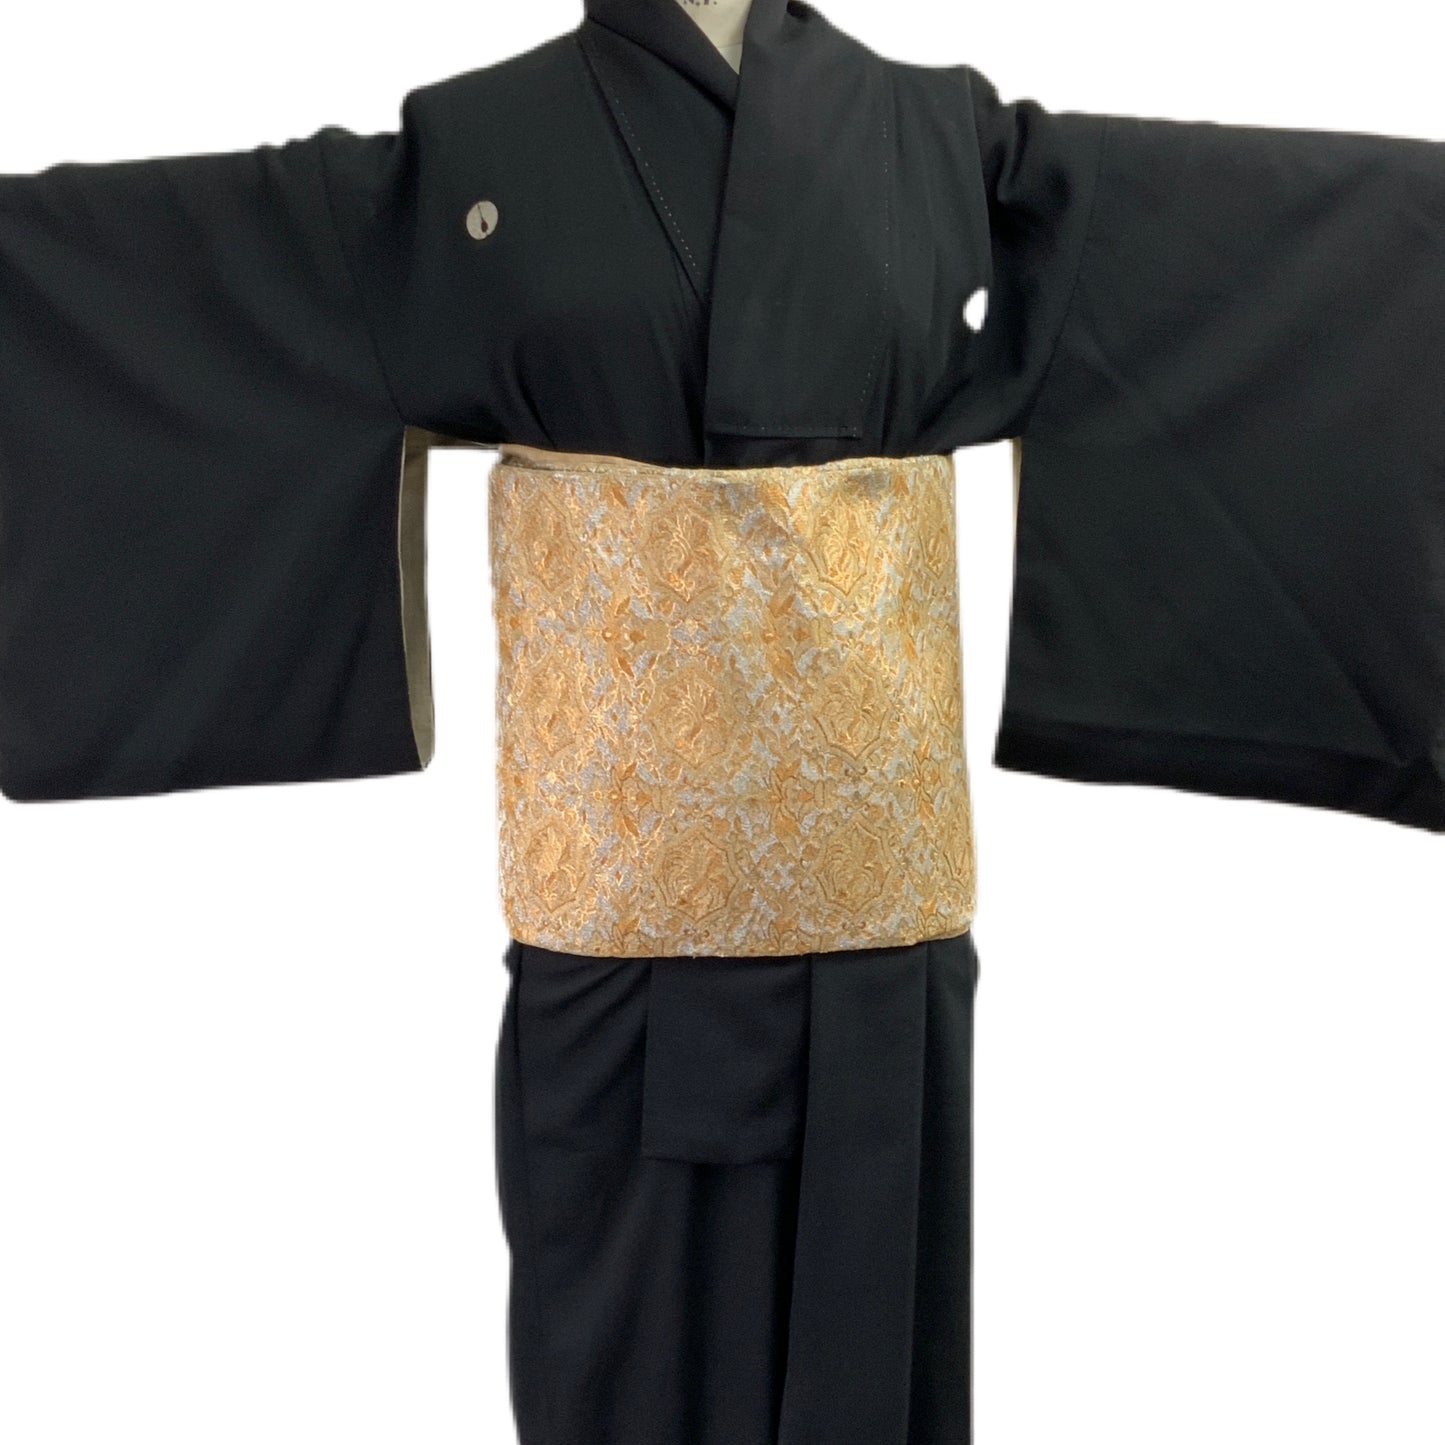 OBI Original mehrfarbiger japanischer Gürtel für Kimono 93